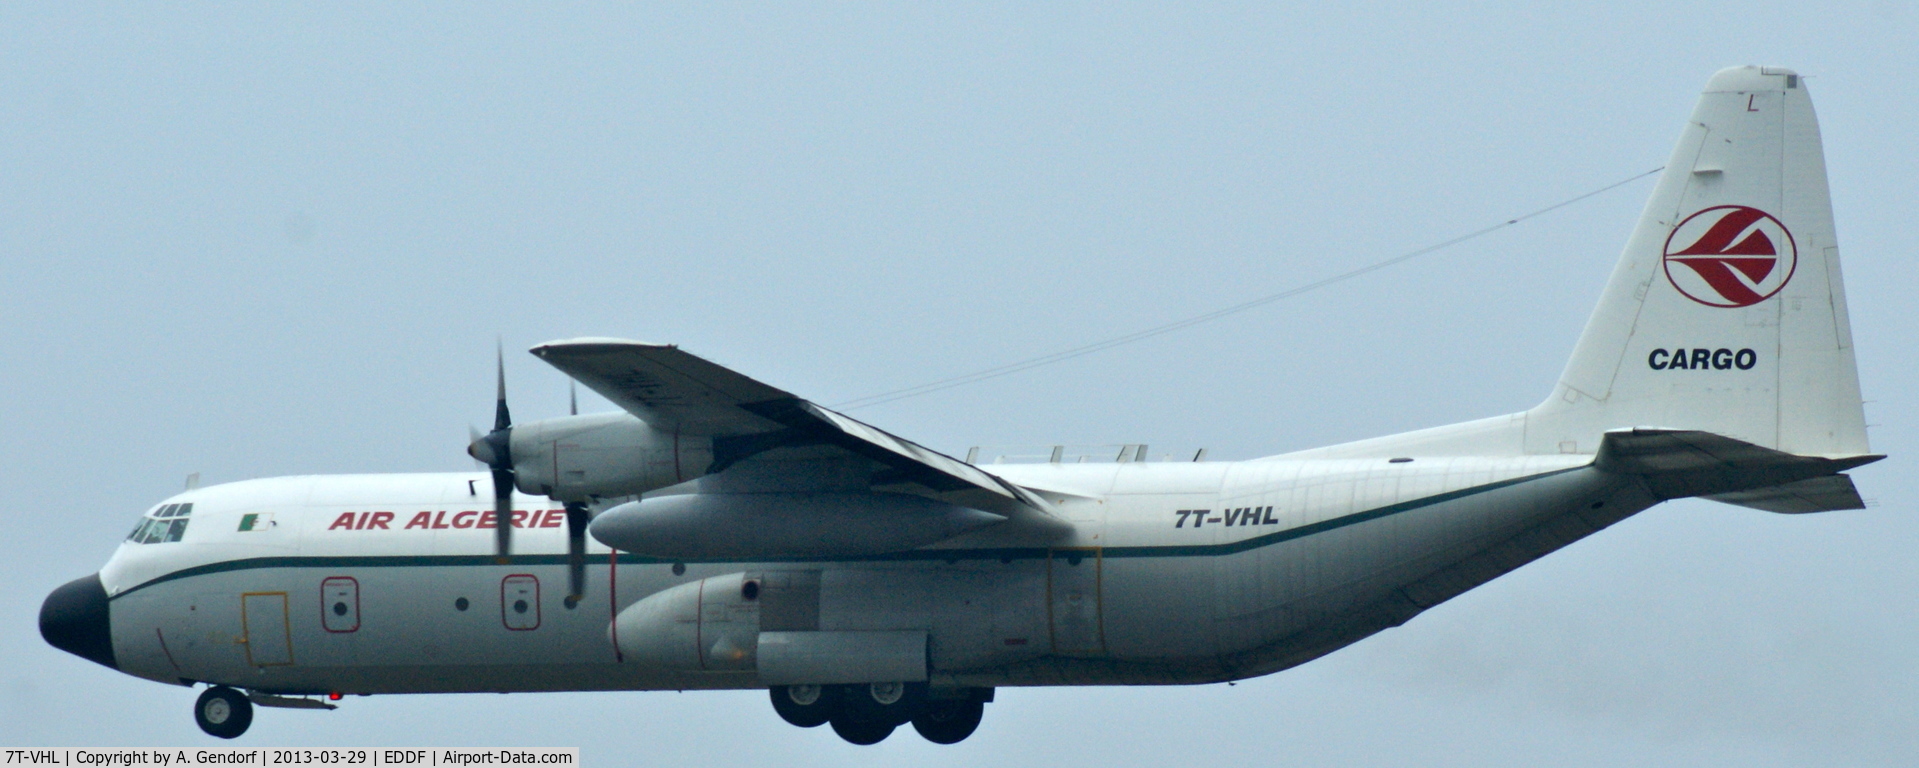 7T-VHL, 1981 Lockheed L-100-30 Hercules (L-382G) C/N 382-4886, Air Algerie Cargo, is arriving from Algiers at Frankfurt Int´l (EDDF)